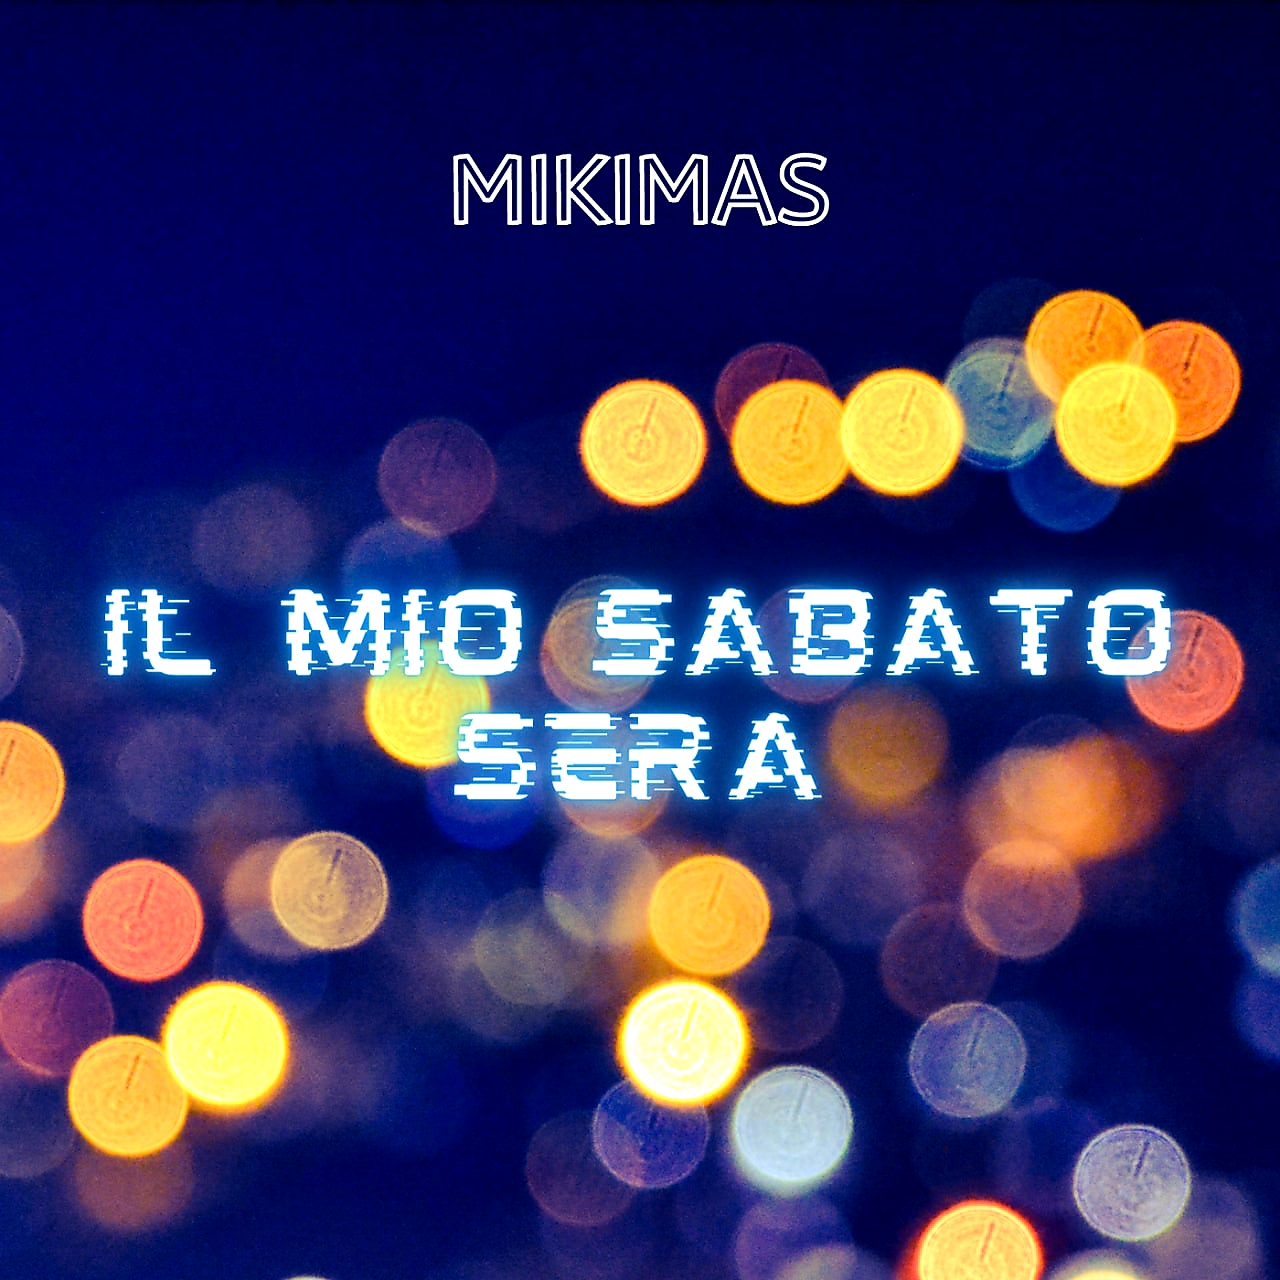 “Il Mio Sabato Sera”, il nuovo singolo del cantautore Mikimas disponibile in streaming